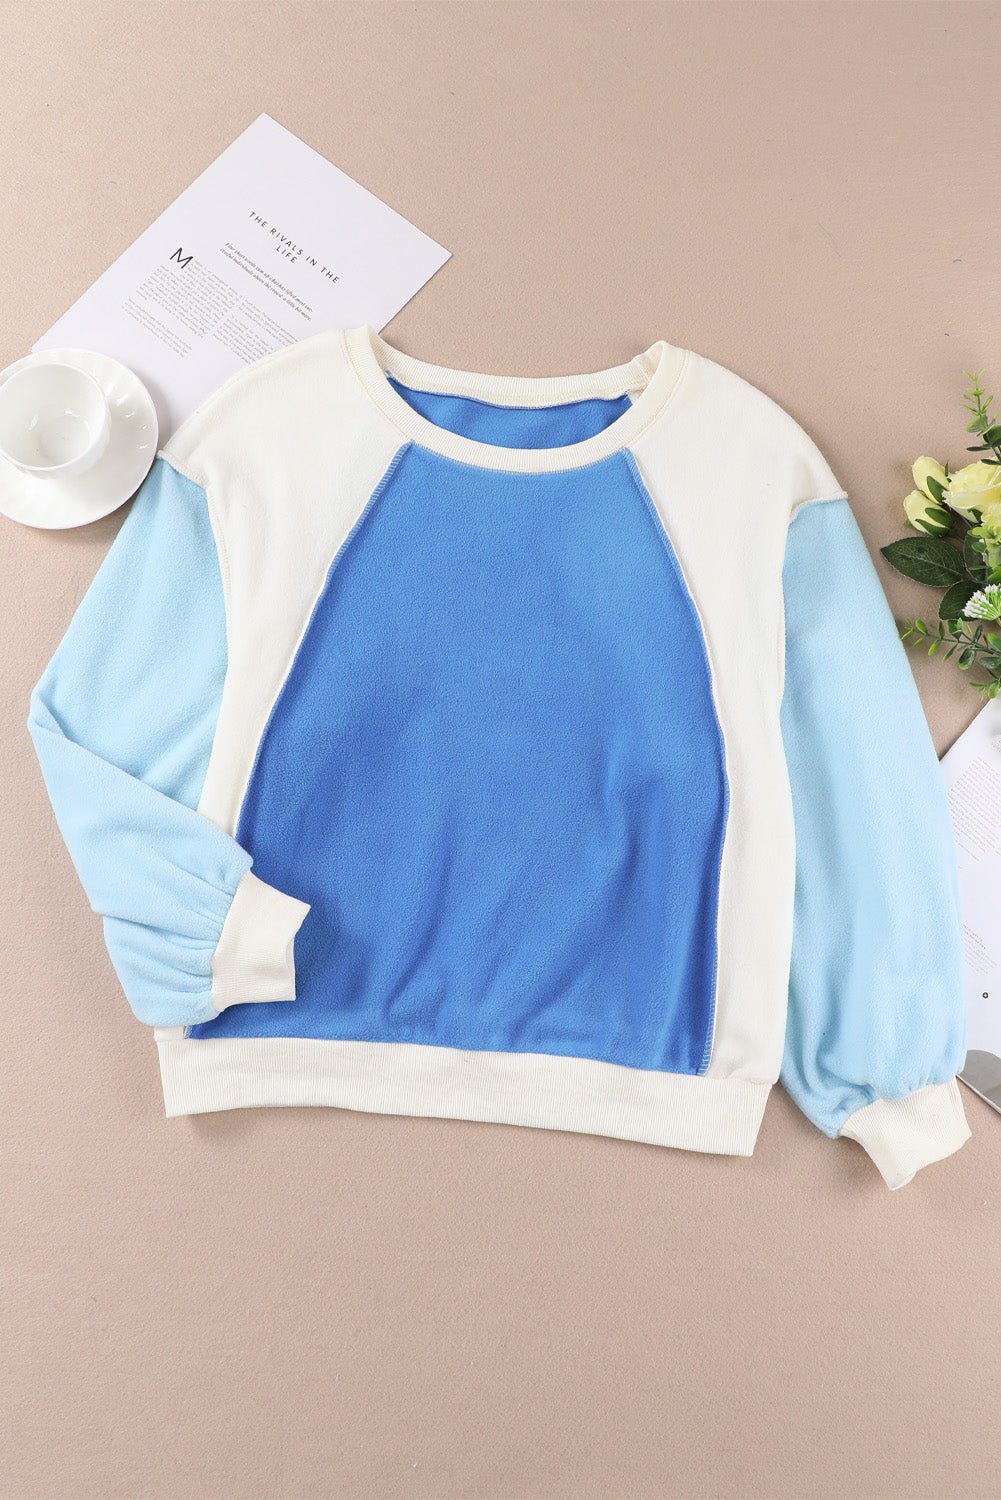 Color Block Sweatshirt - Sweatshirt Tangerine Goddess Sky Blue / S